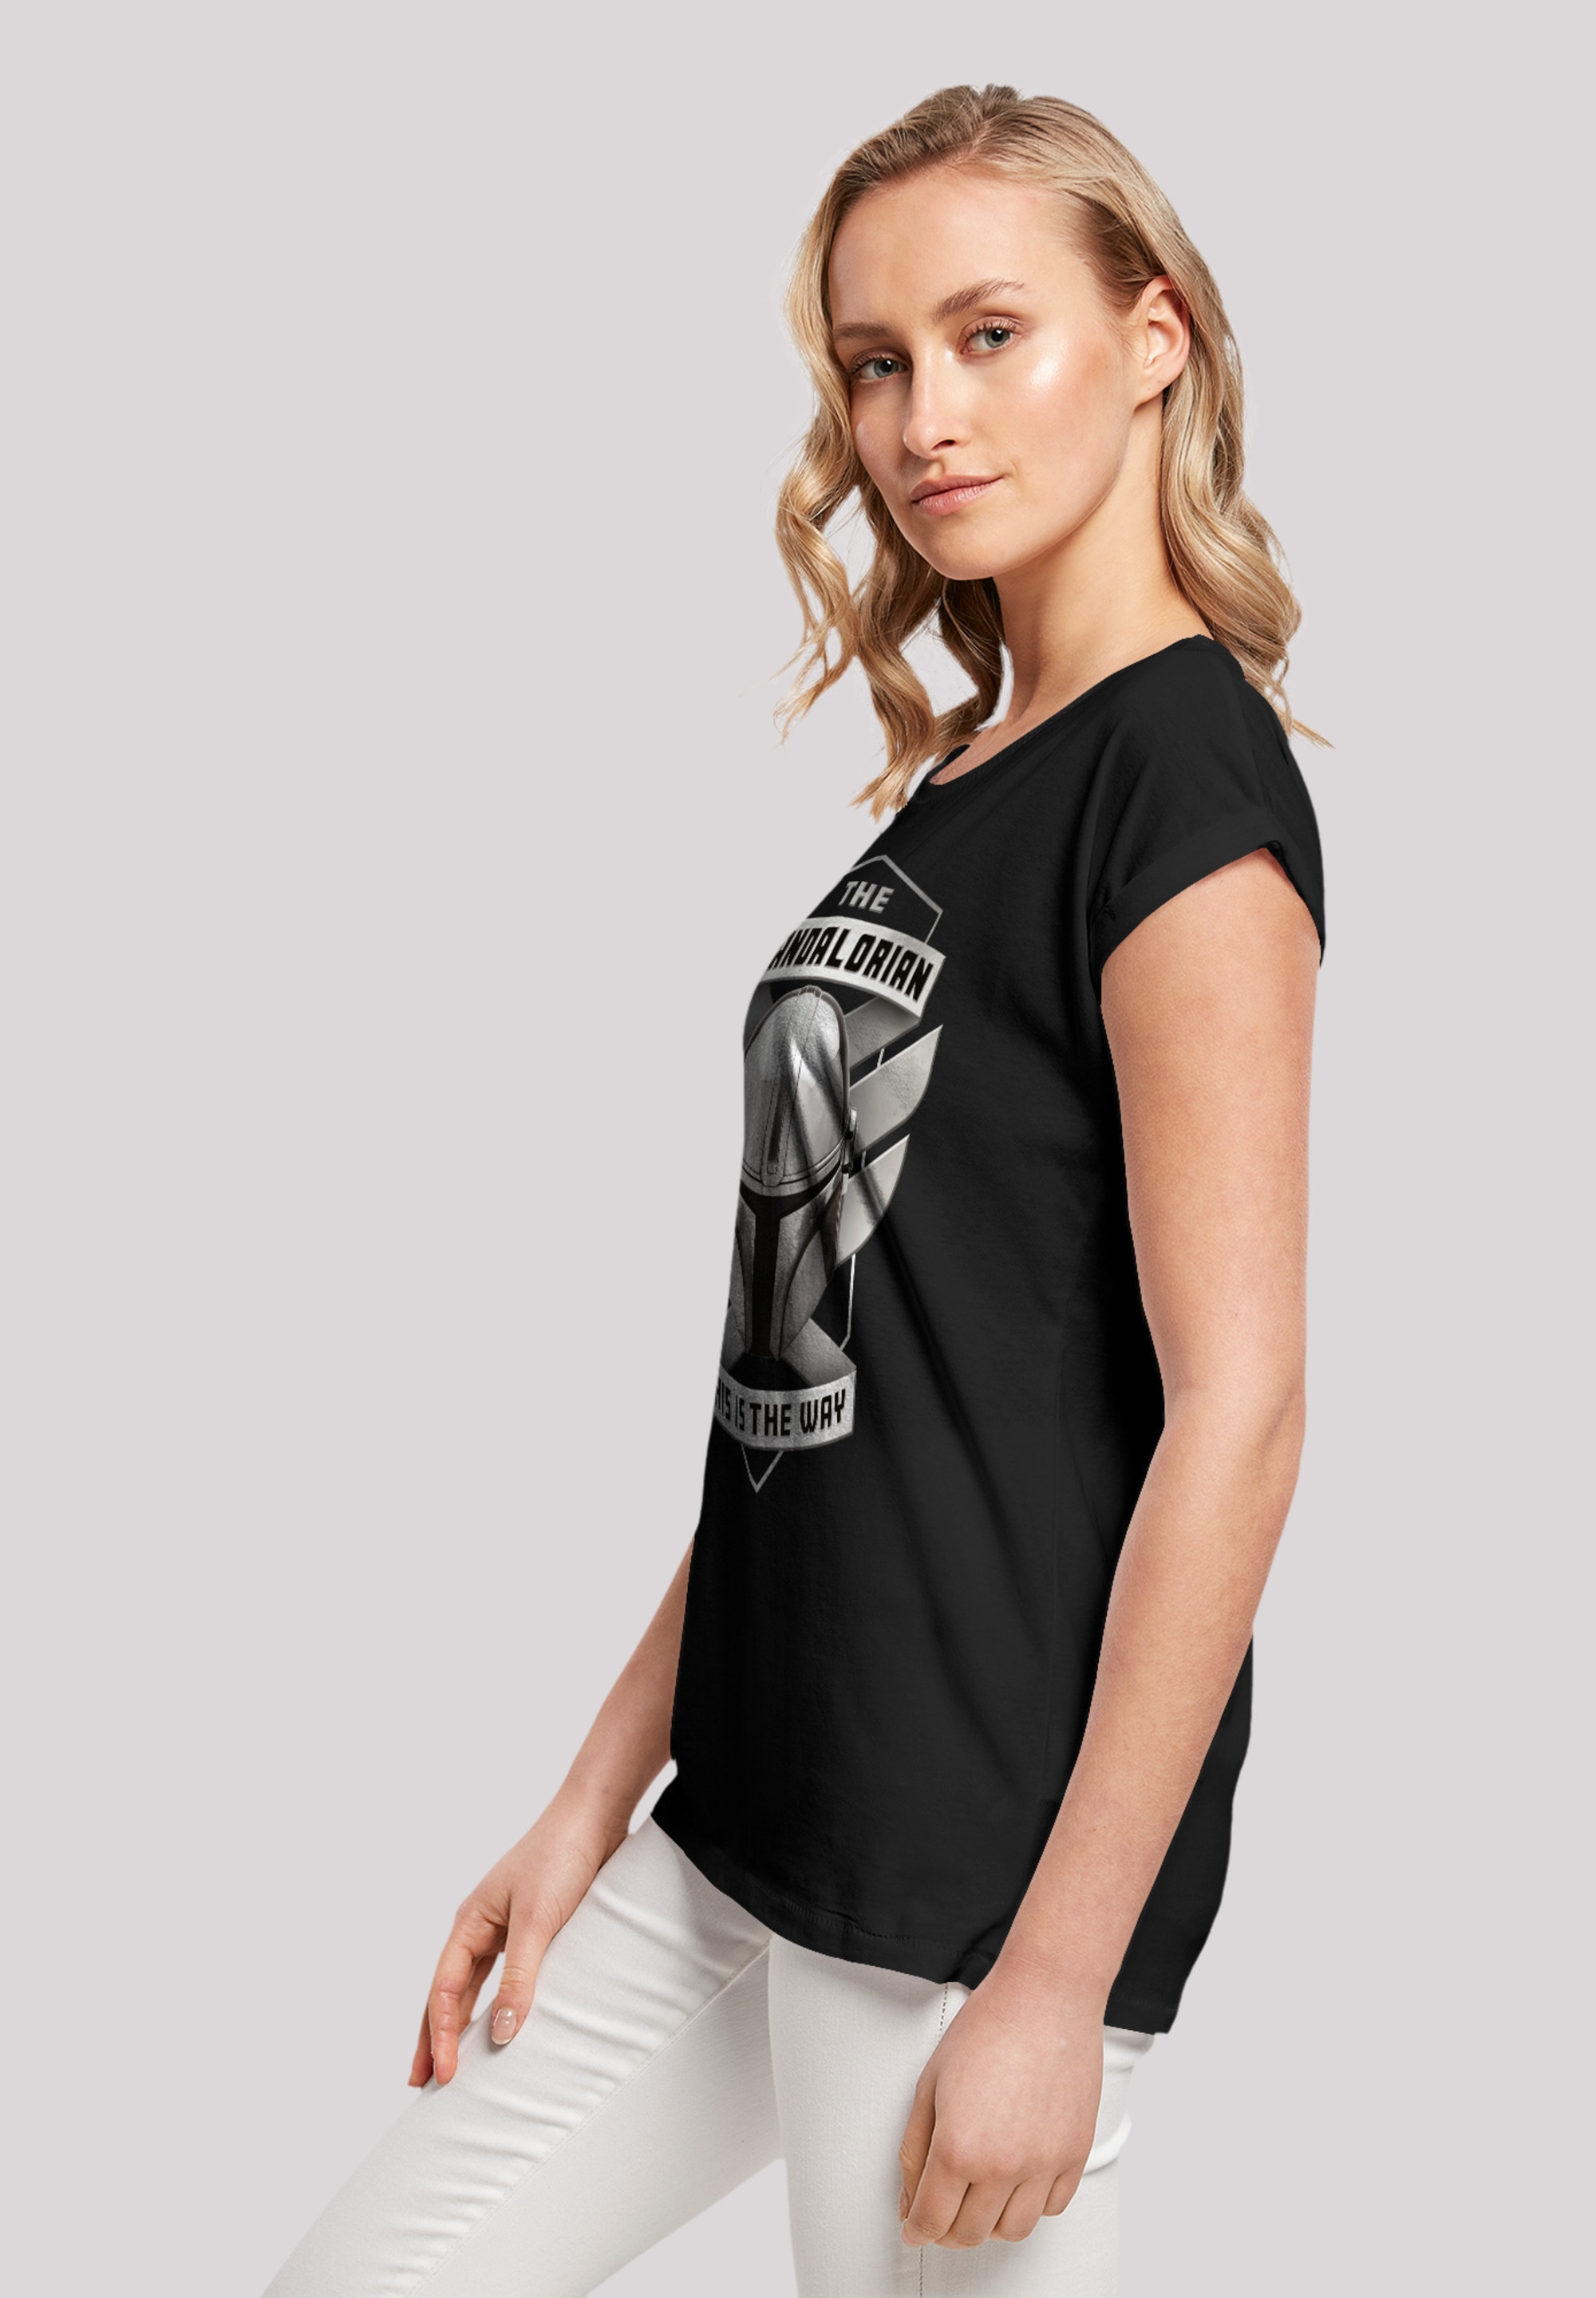 BAUR This F4NT4STIC für The Way«, Mandalorian Qualität Premium | T-Shirt bestellen »Star The Is Wars